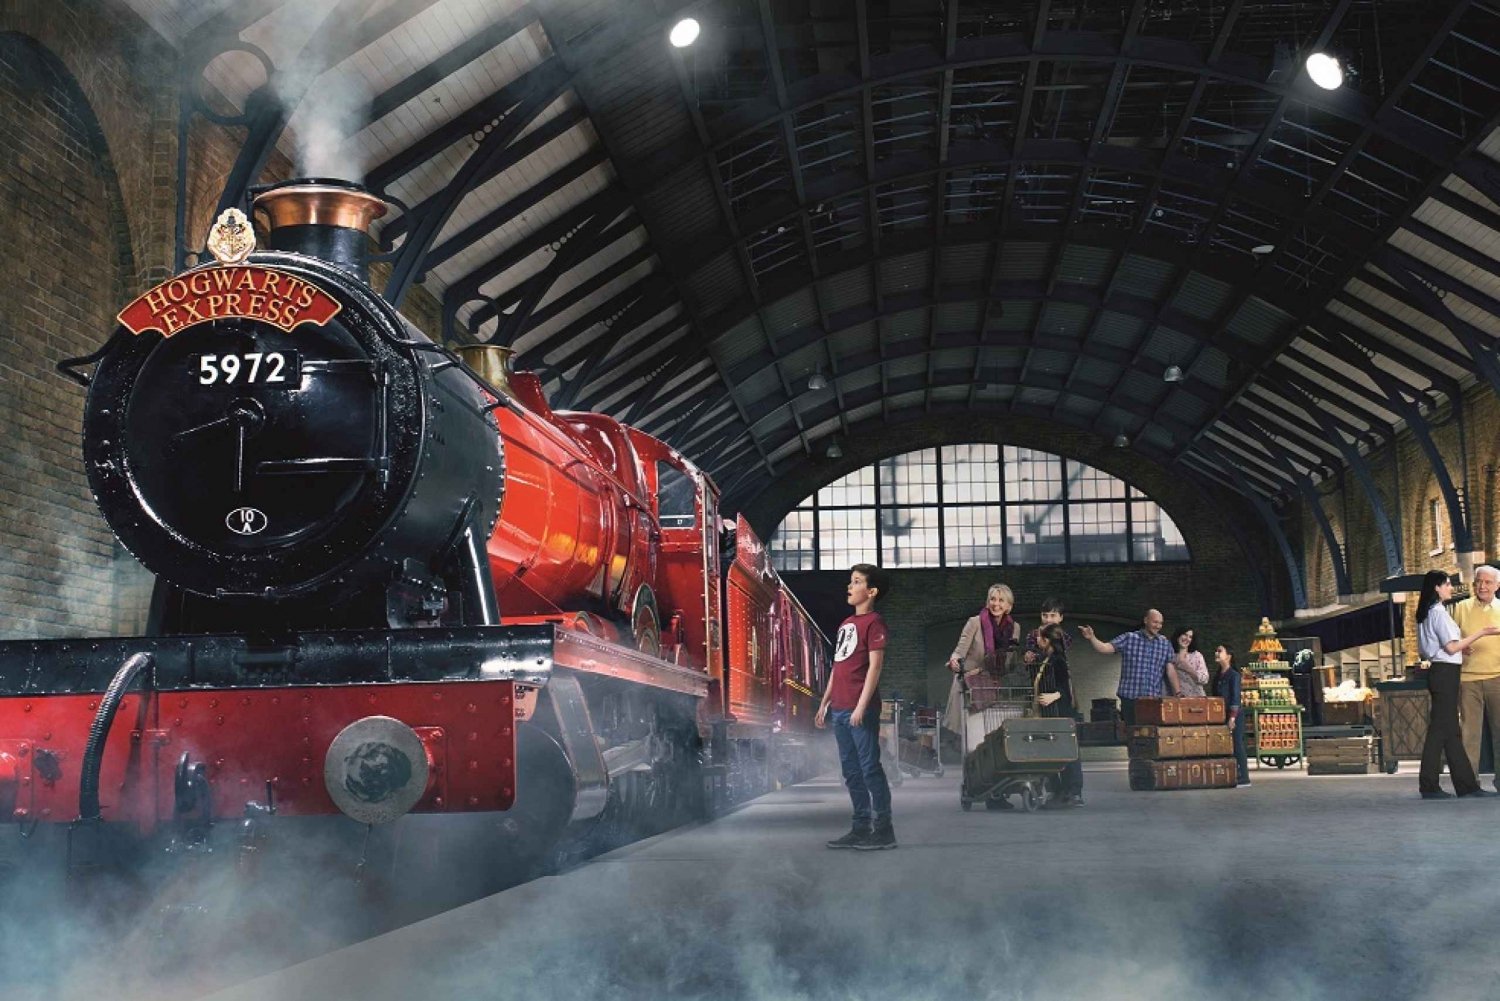 London: Harry Potter Warner Bros. Tour mit Hotelpaket